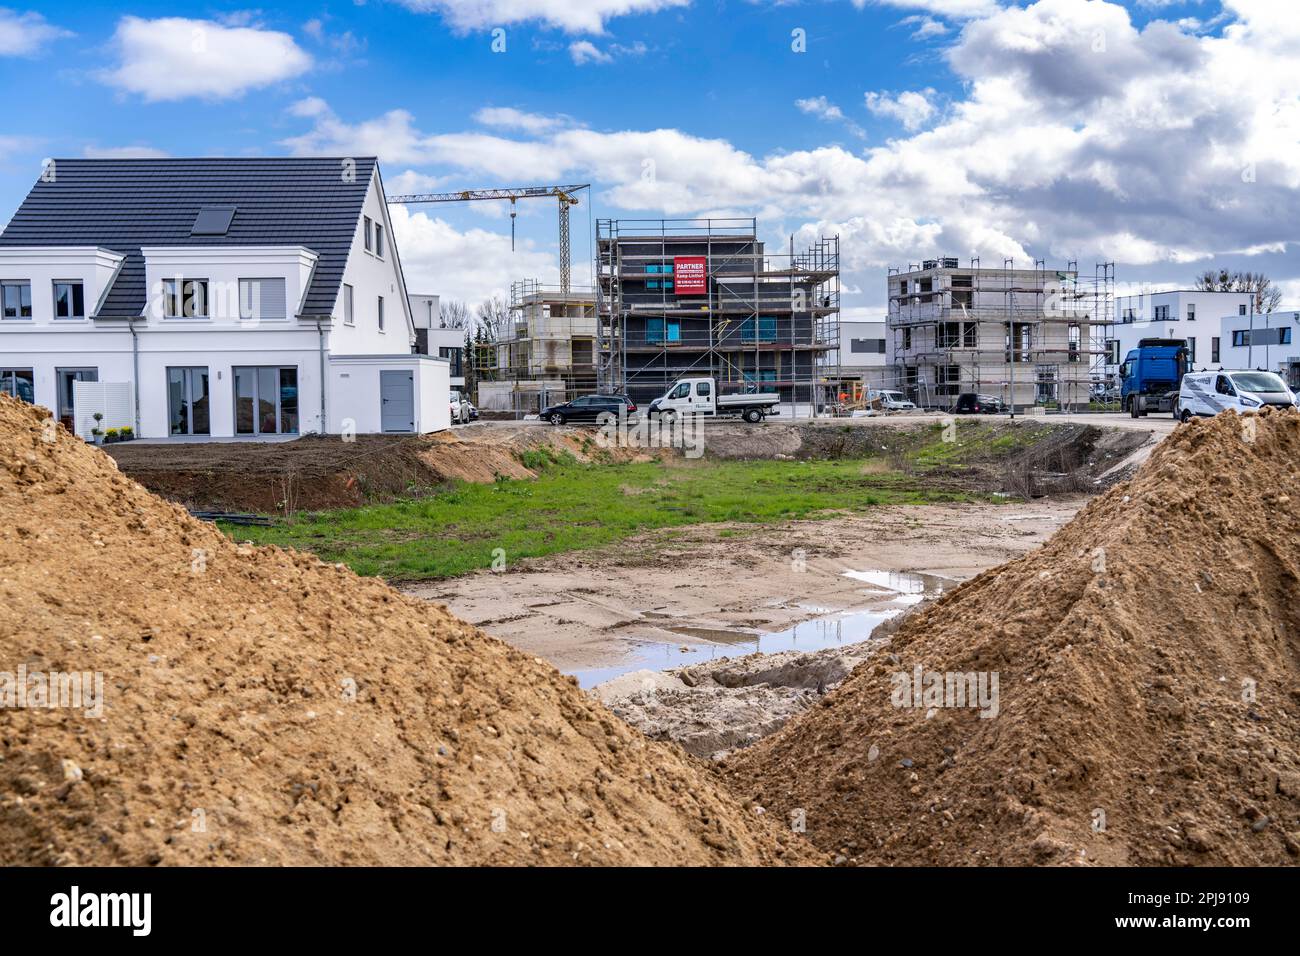 Neues Entwicklungsviertel, rund 140 freistehende und halbfreistehende Villen, die im Süden von Duisburg gebaut werden, verschiedene Bauherren, noch unerschlossen l Stockfoto